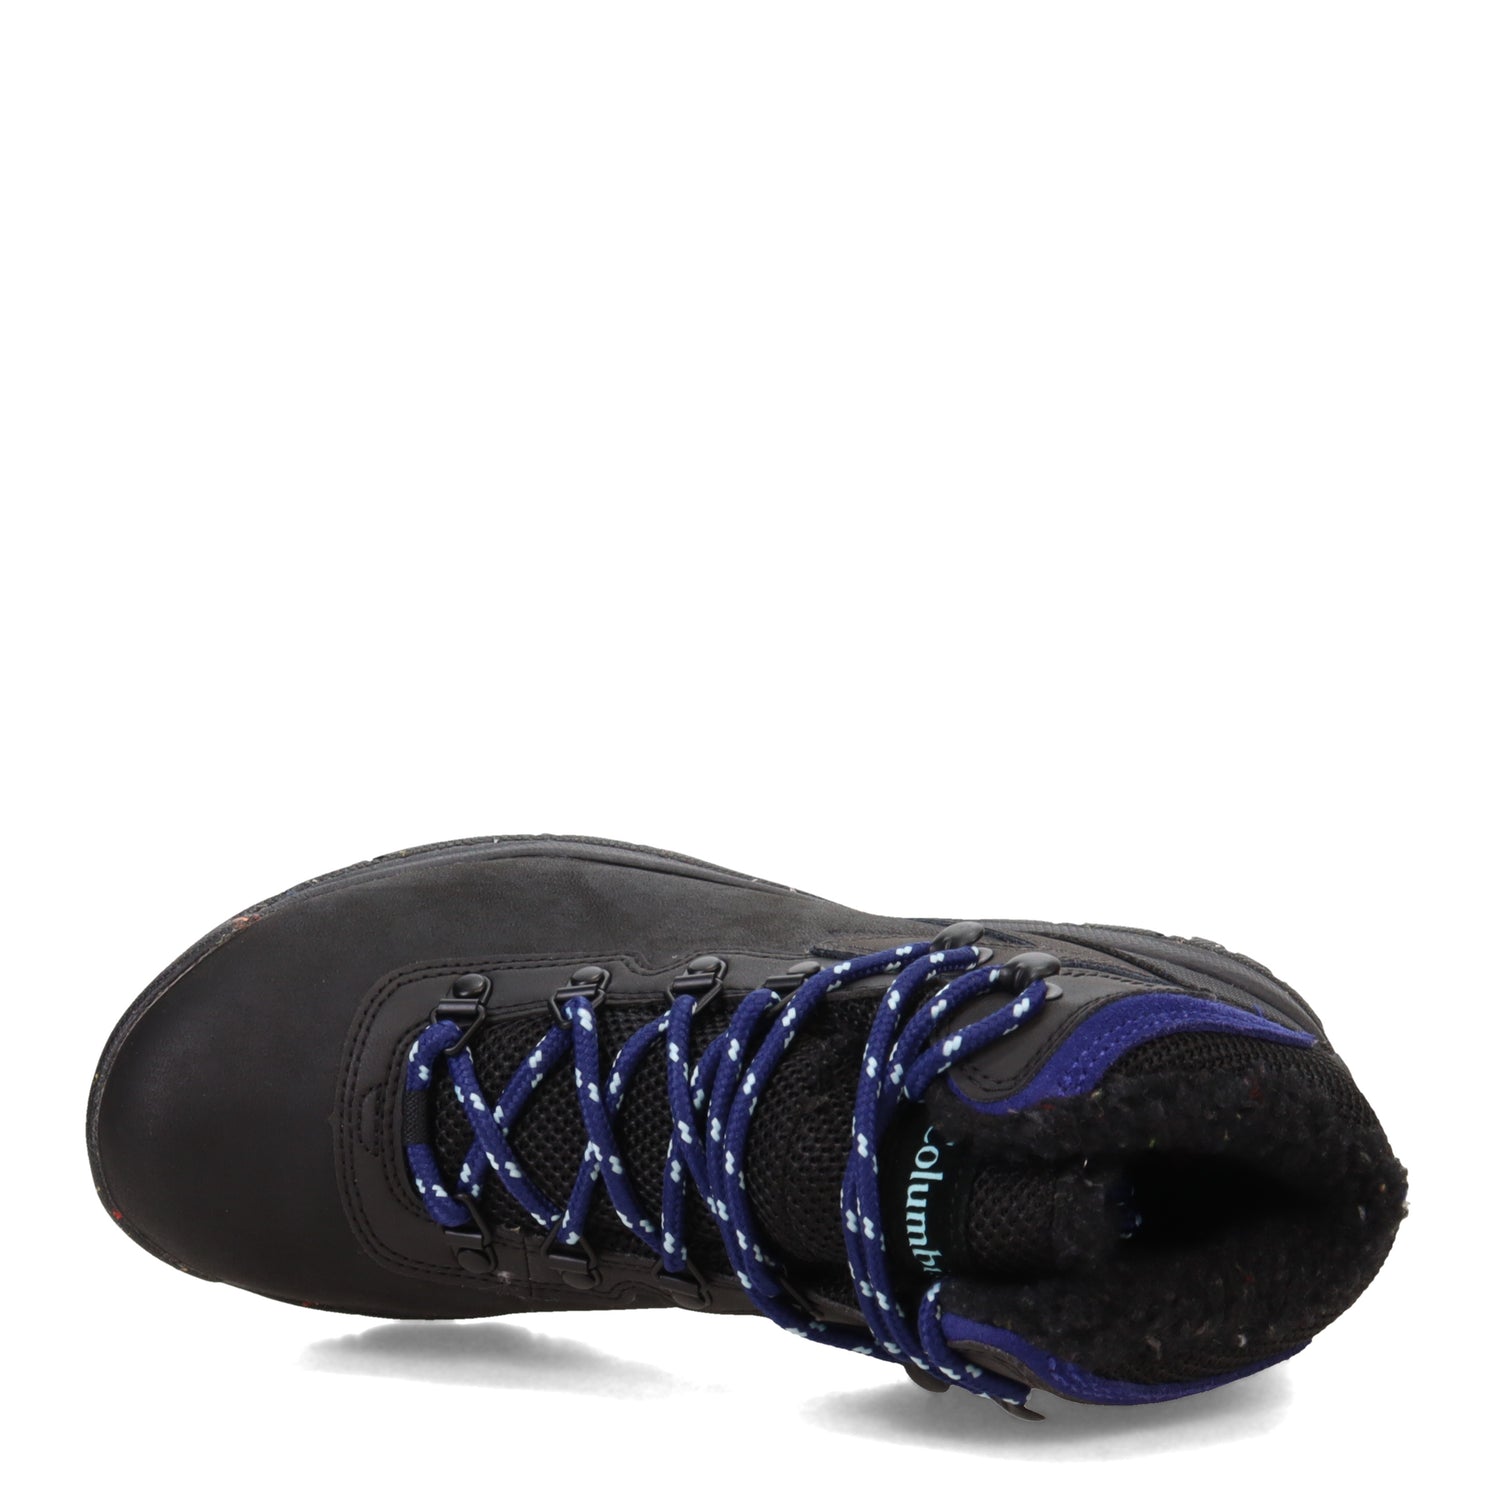 Peltz Shoes  Women's Columbia  Newton Ridge Plus Omni-Heat Boot BLACK 2015691-010